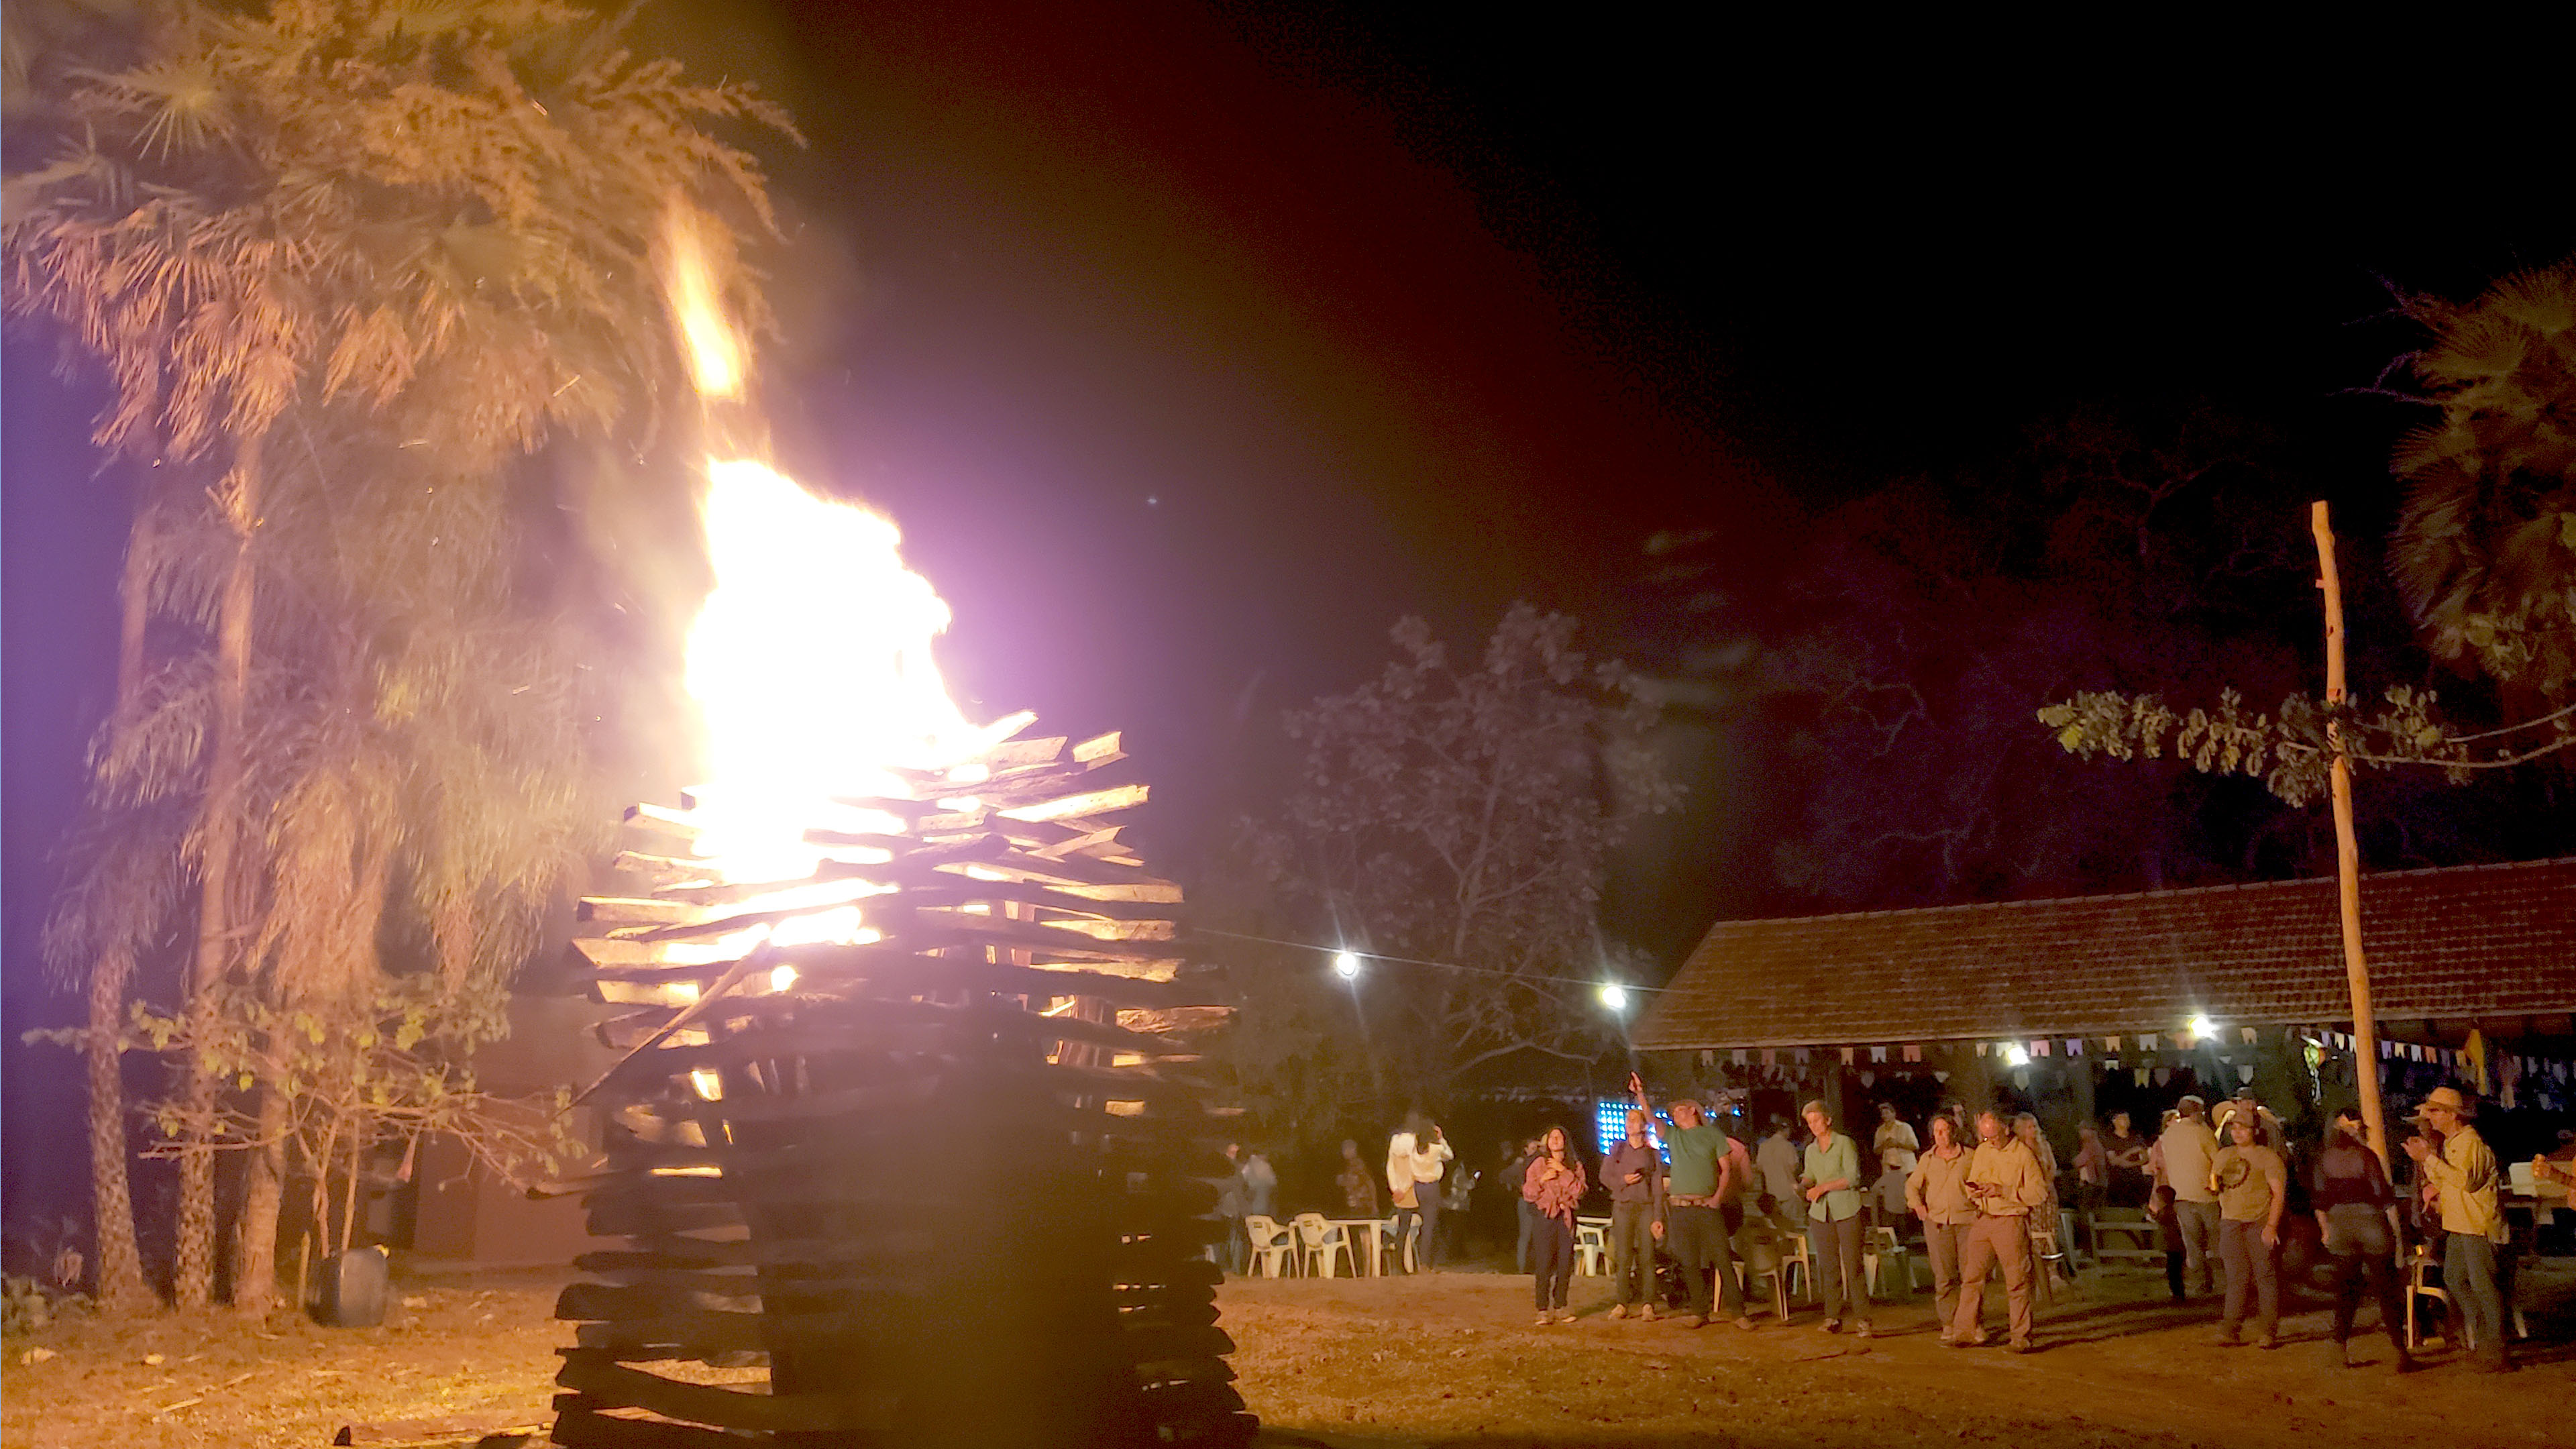 Menschengruppe am Lagerfeuer vor nächtlichem Himmel